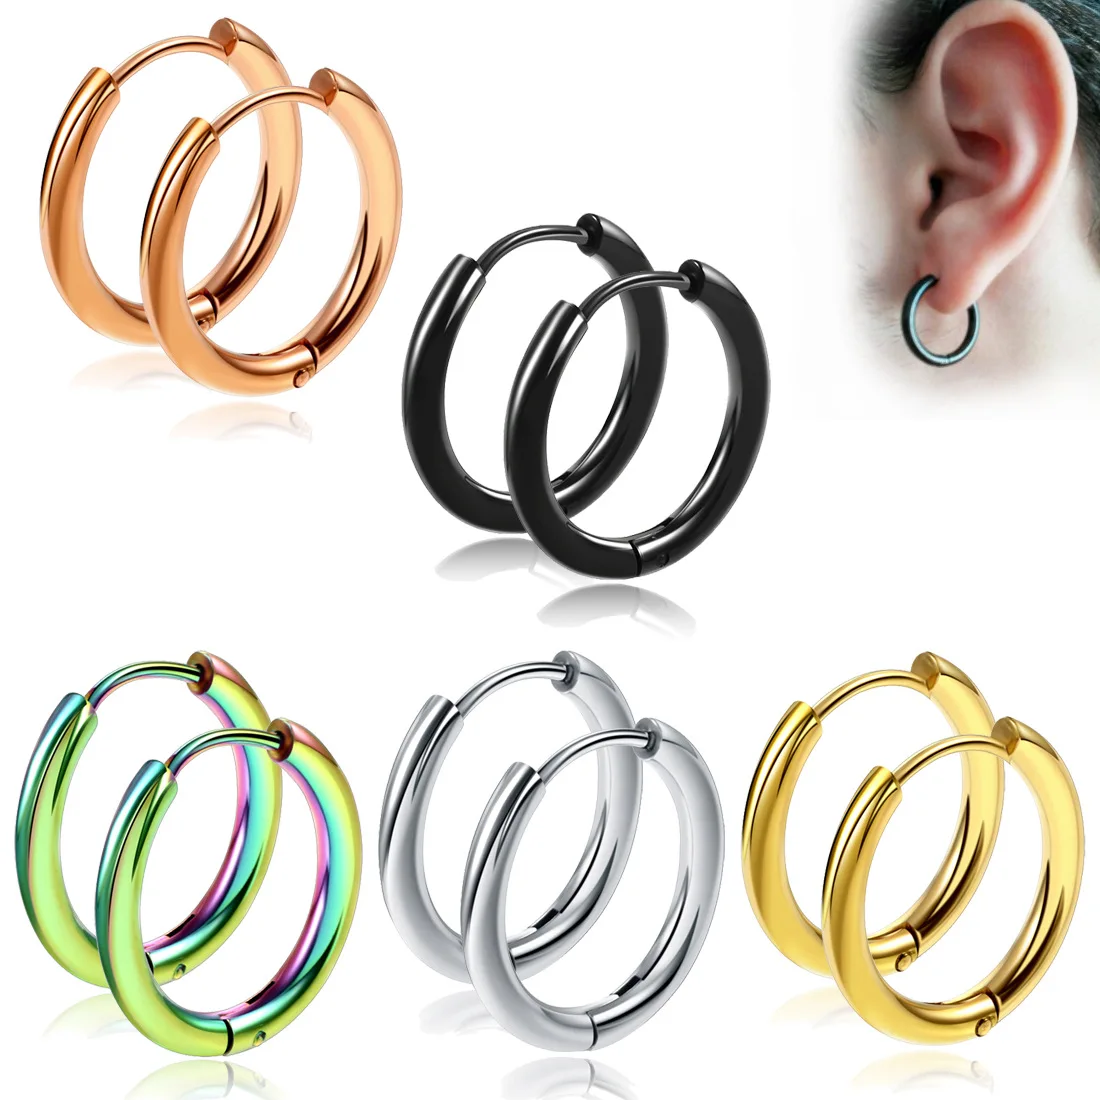 

Trendy 316L Surgical Stainless Steel Huggie Hypoallergenic Earrings Hoop Cartilage Helix Lobes Hinged Sleeper Hoop Earrings, Silver/gold/rose gold/black/colorful